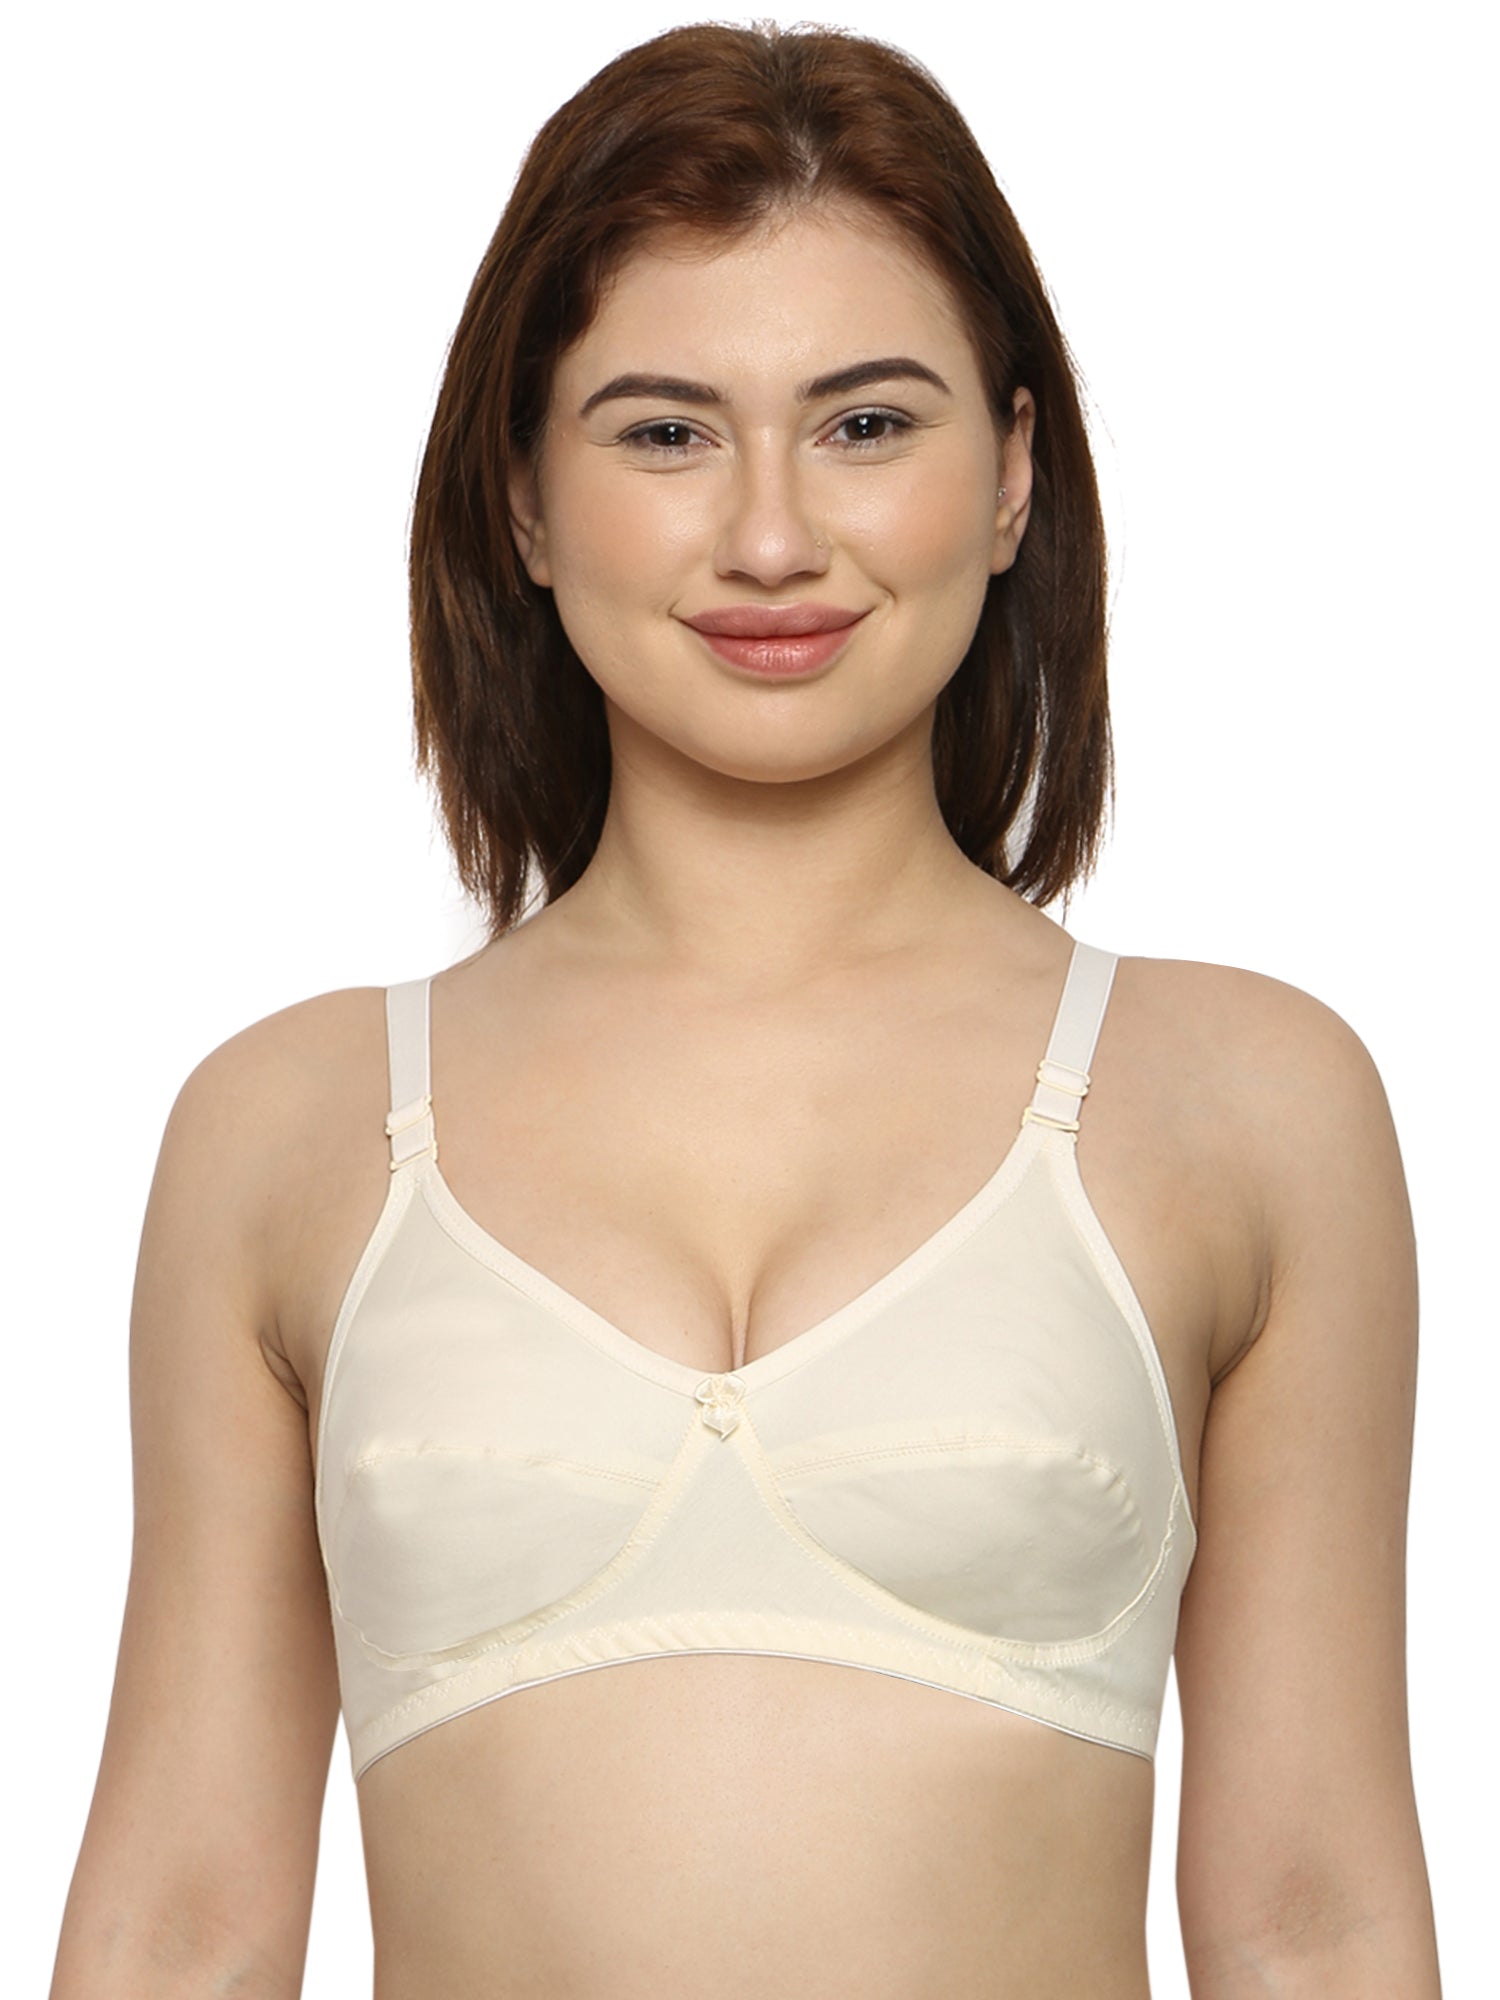 Buy Full Coverage bra, Ladies Cotton Bra Online in India at Inkurv – INKURV